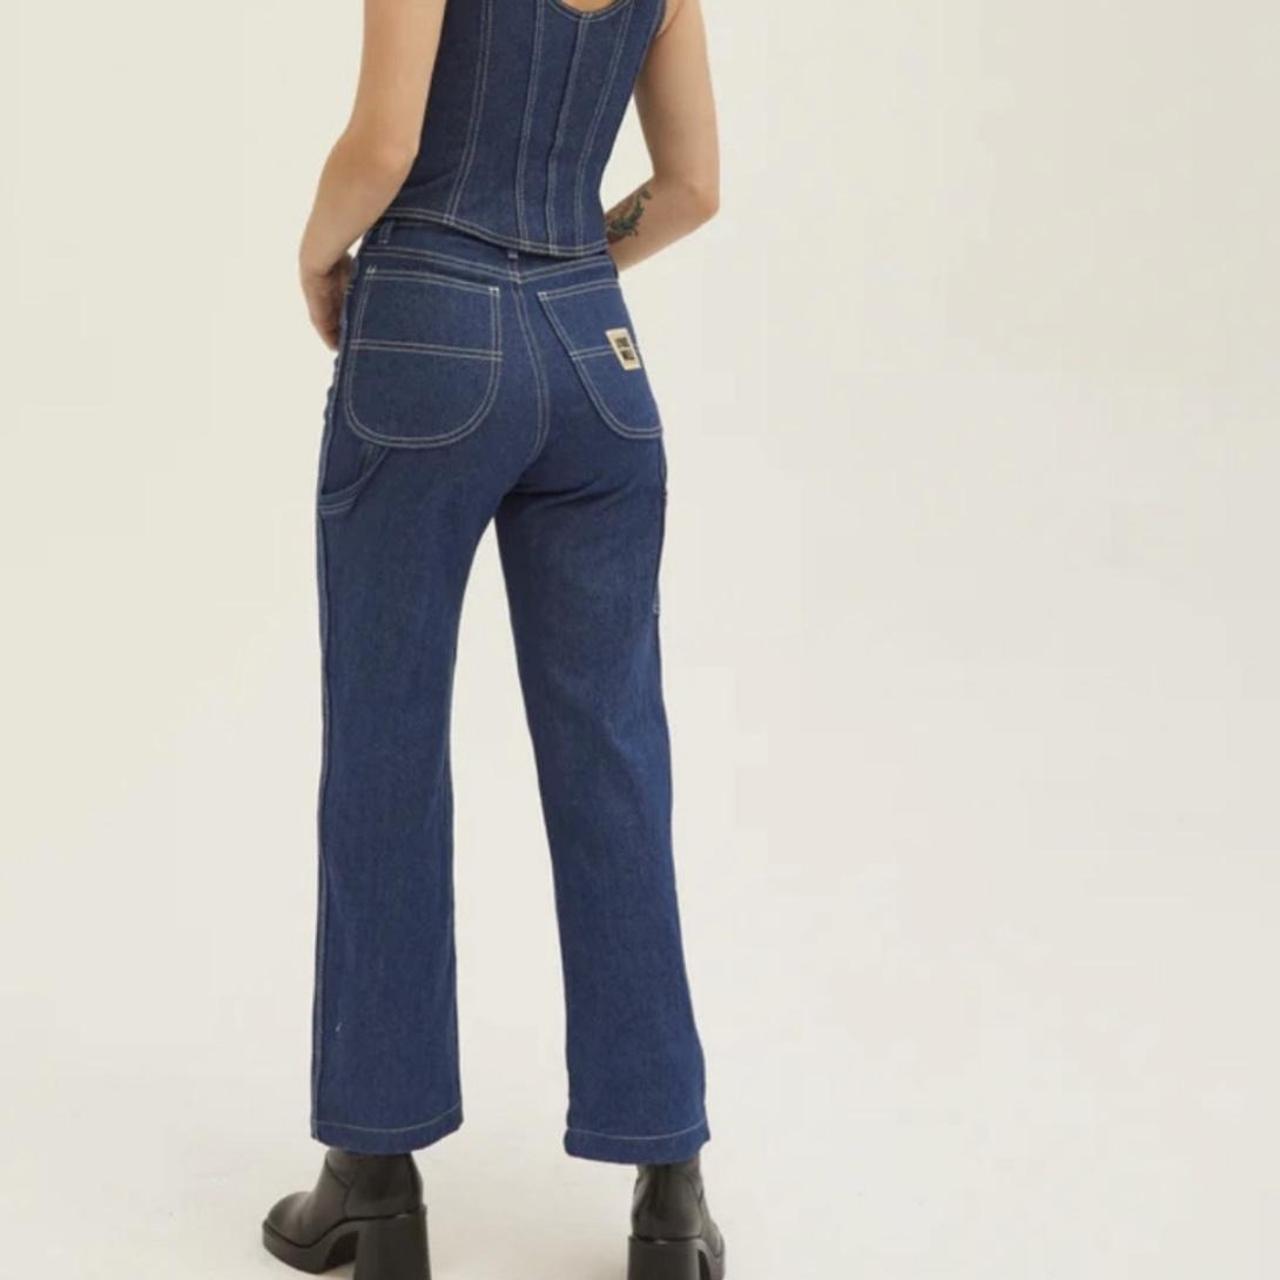 Lykke Wullf Women's Blue Jeans (2)